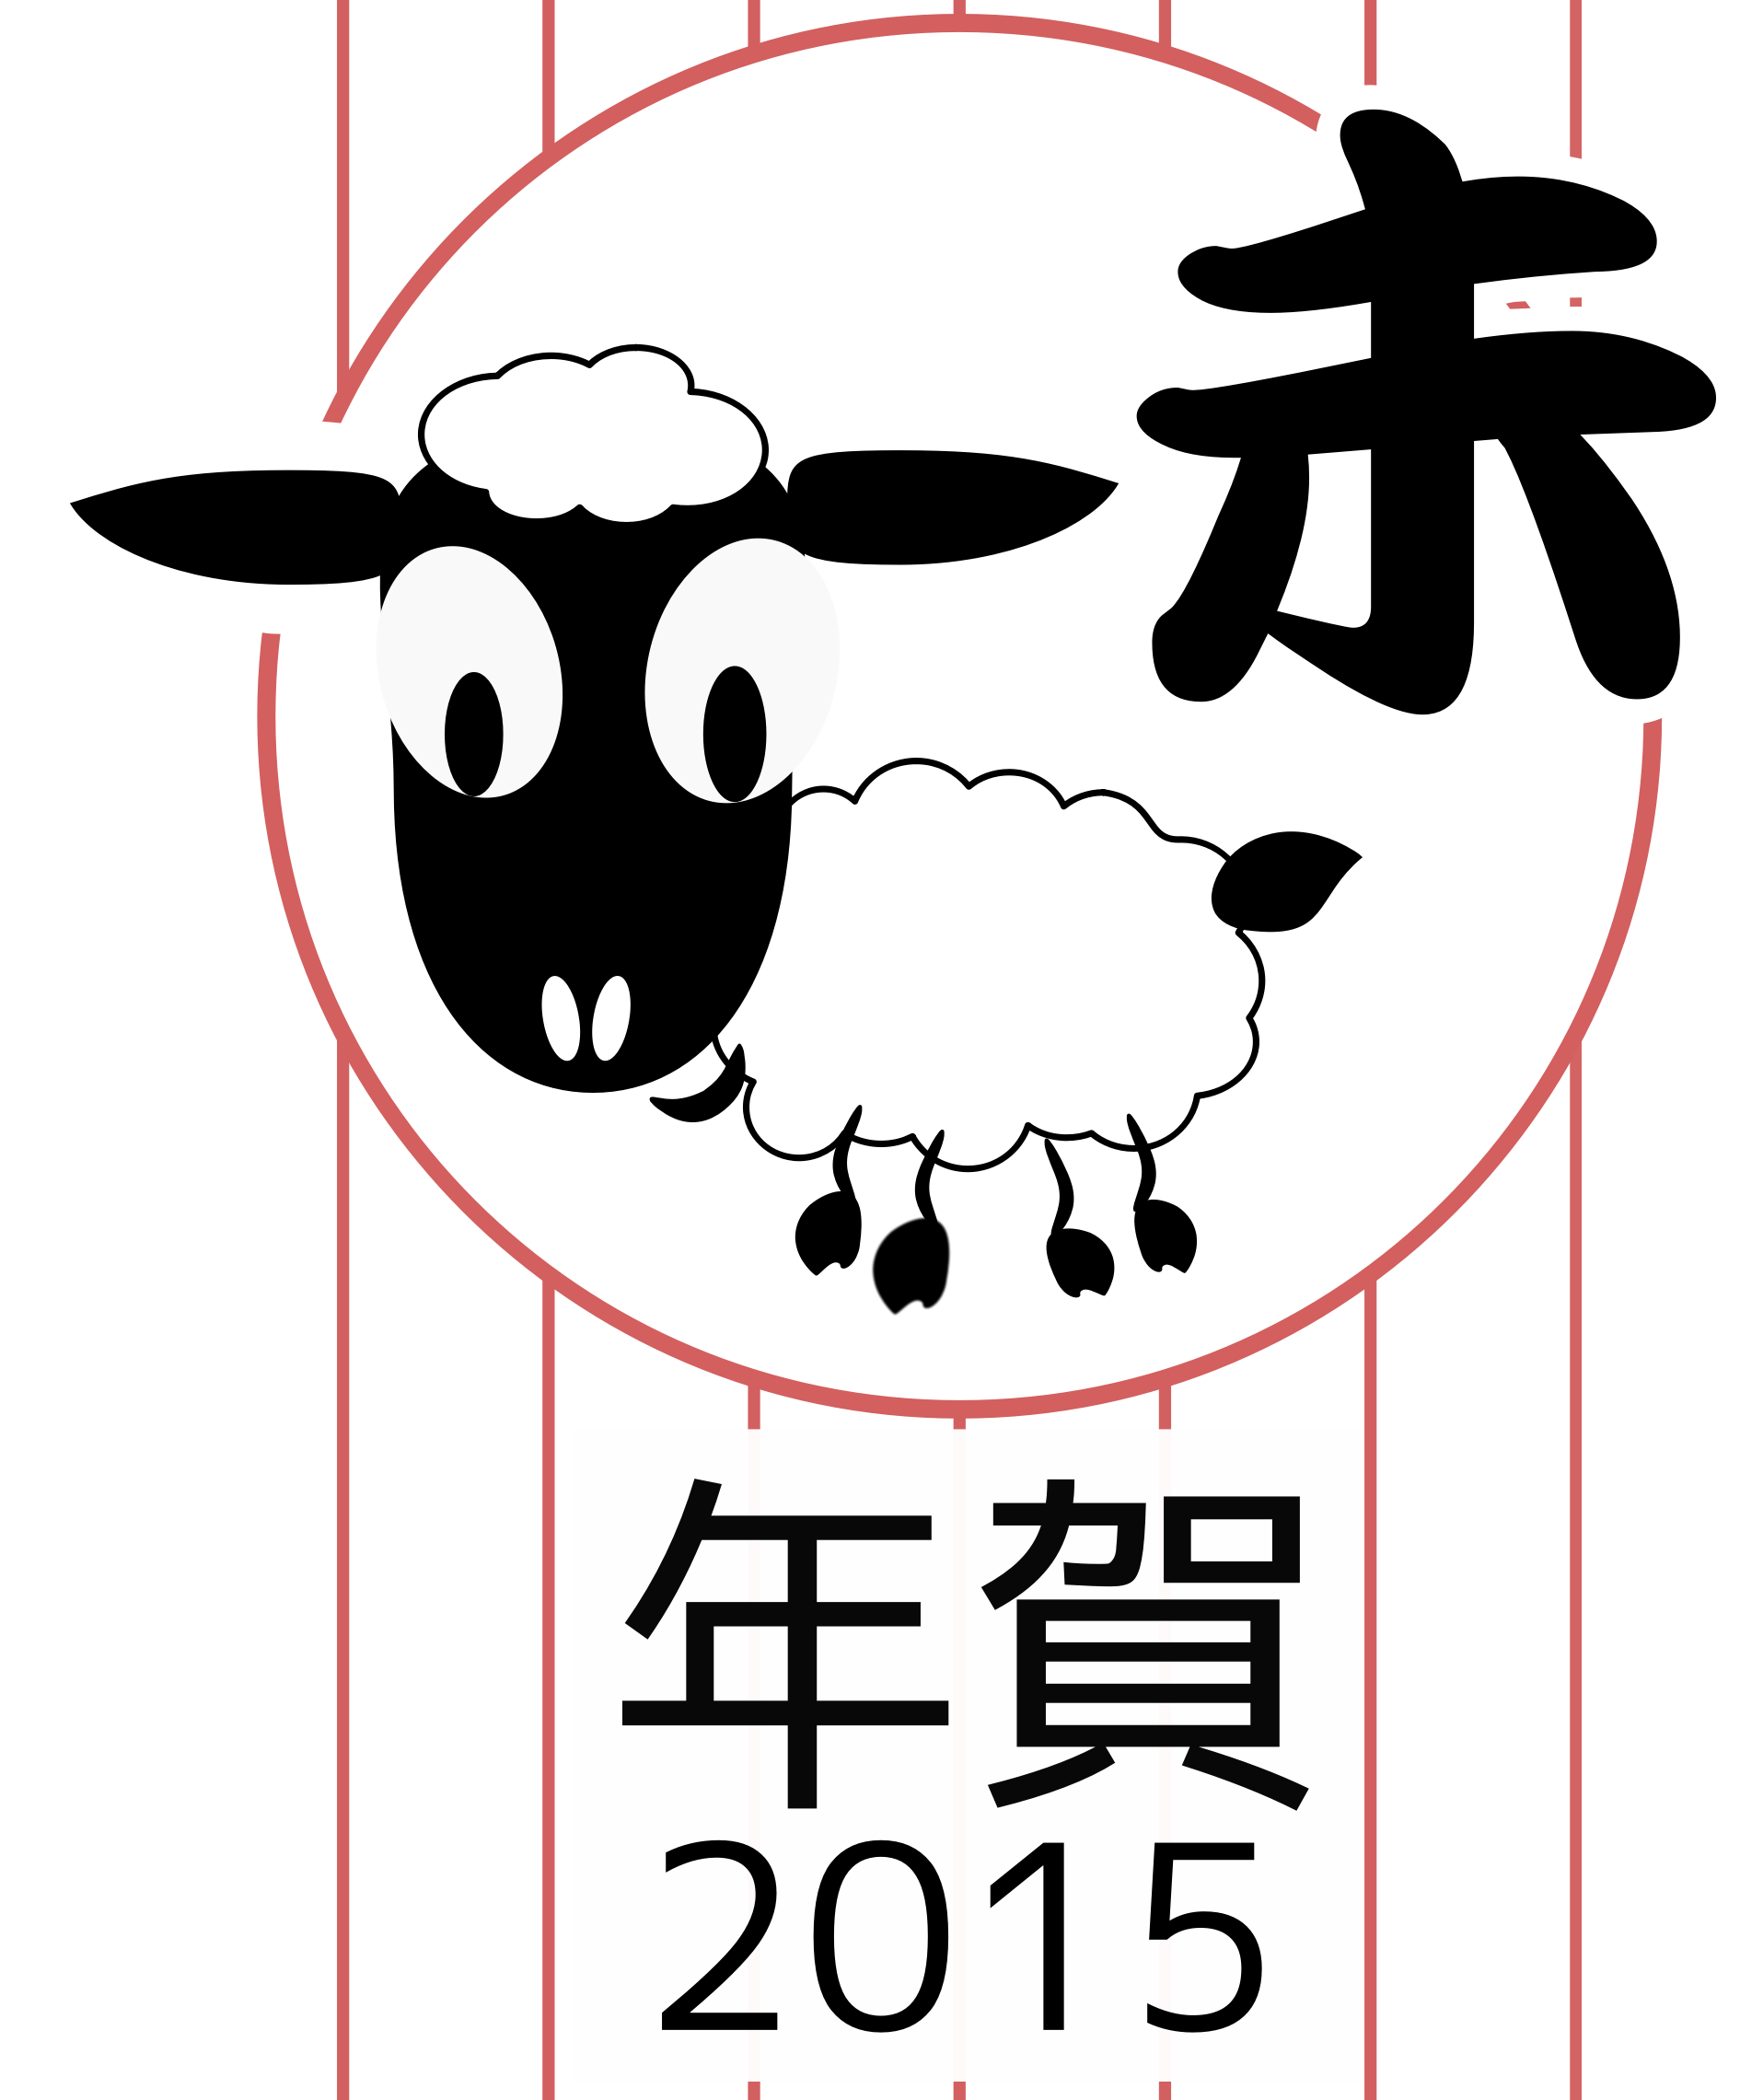 2015 Year Of The Sheep - Chinesische Tierkreis-ziegen-neues Jahr 2015 Postkarte (1890x2281)